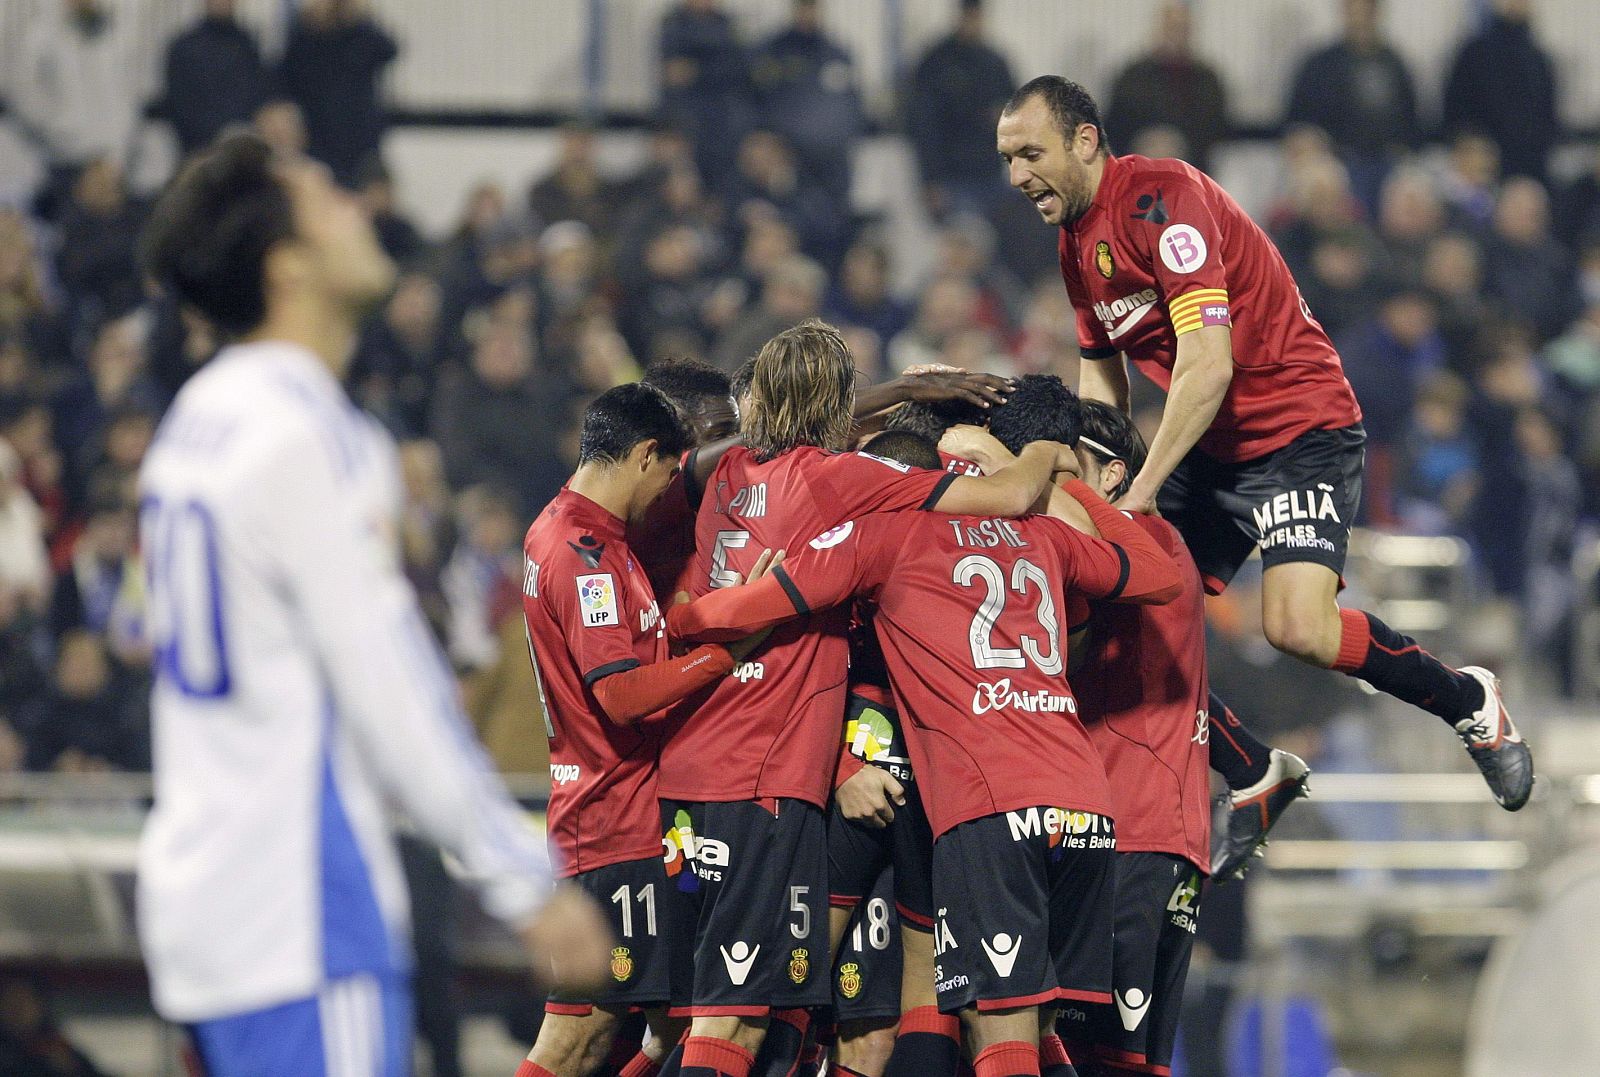 Los jugadores del Real Mallorca celebran la consecución del primer gol frente al Real Zaragoza.